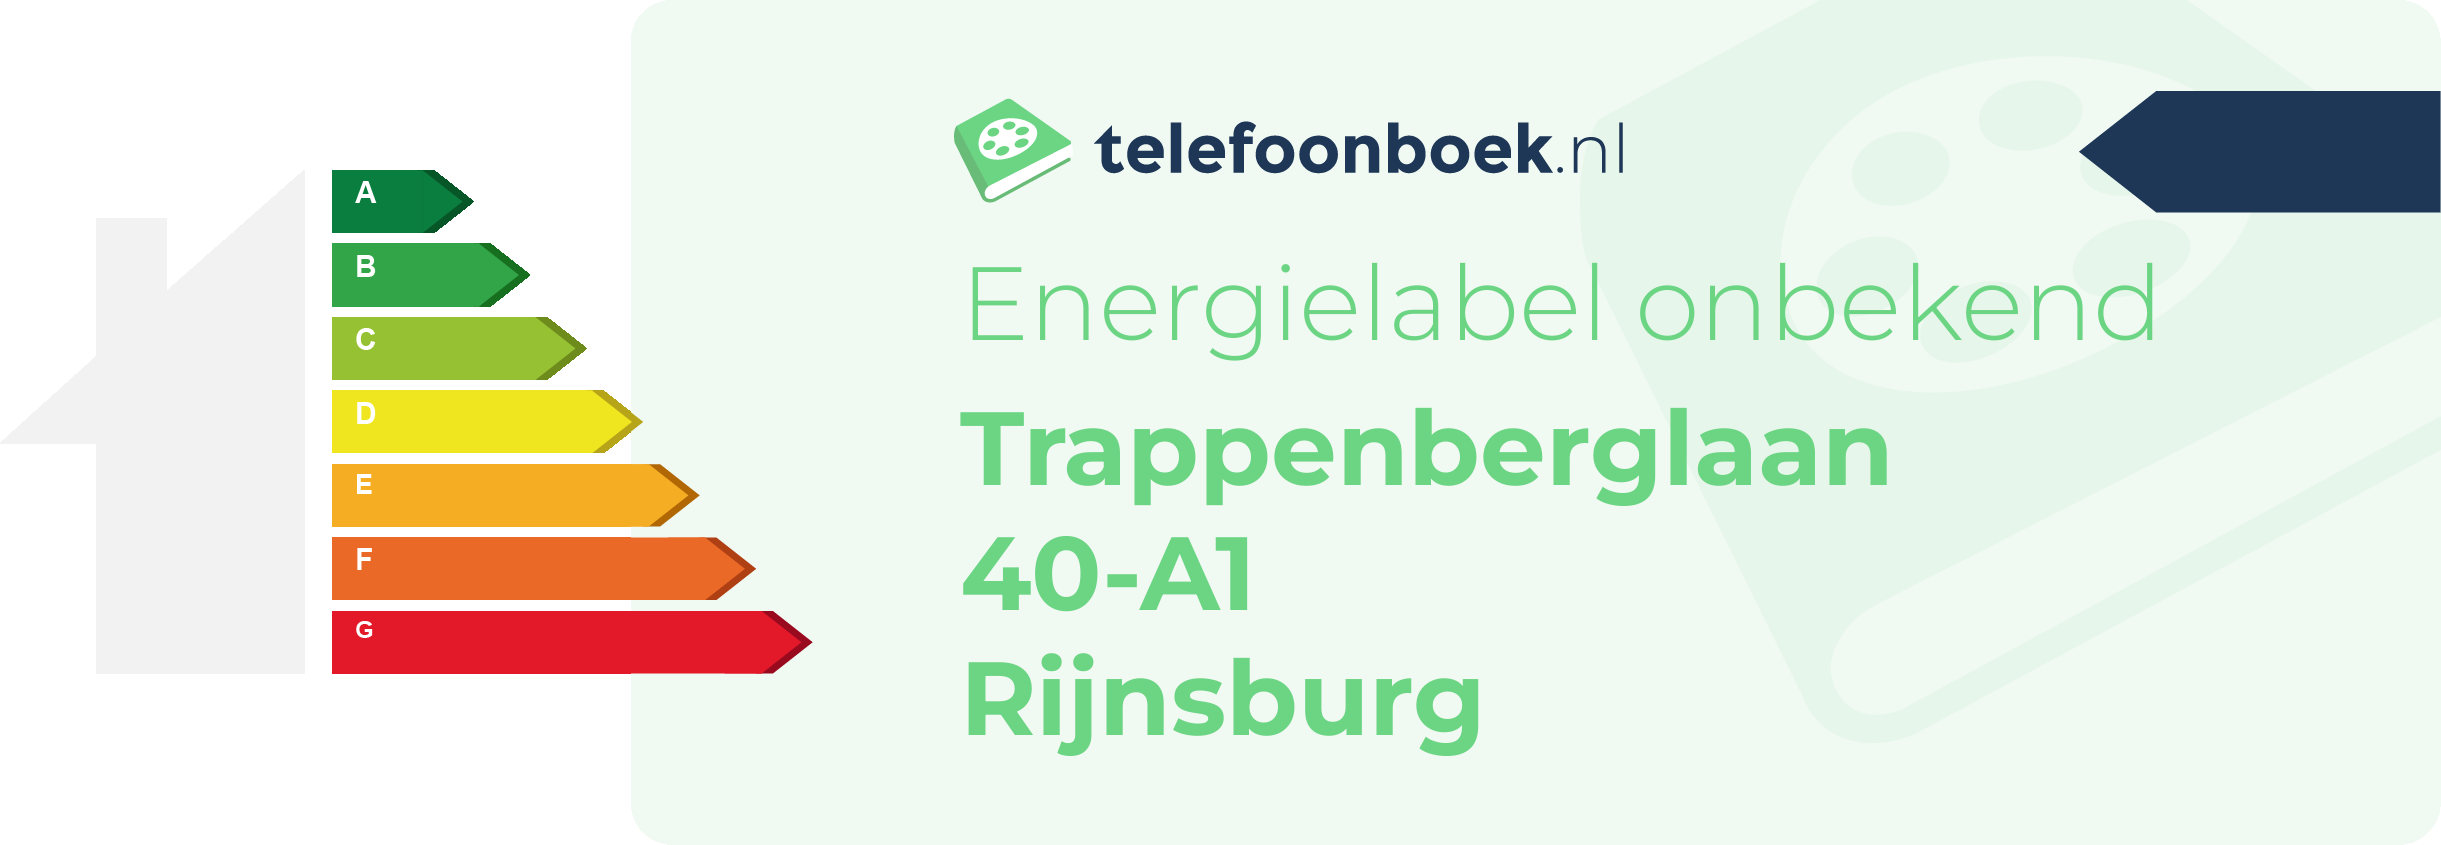 Energielabel Trappenberglaan 40-A1 Rijnsburg